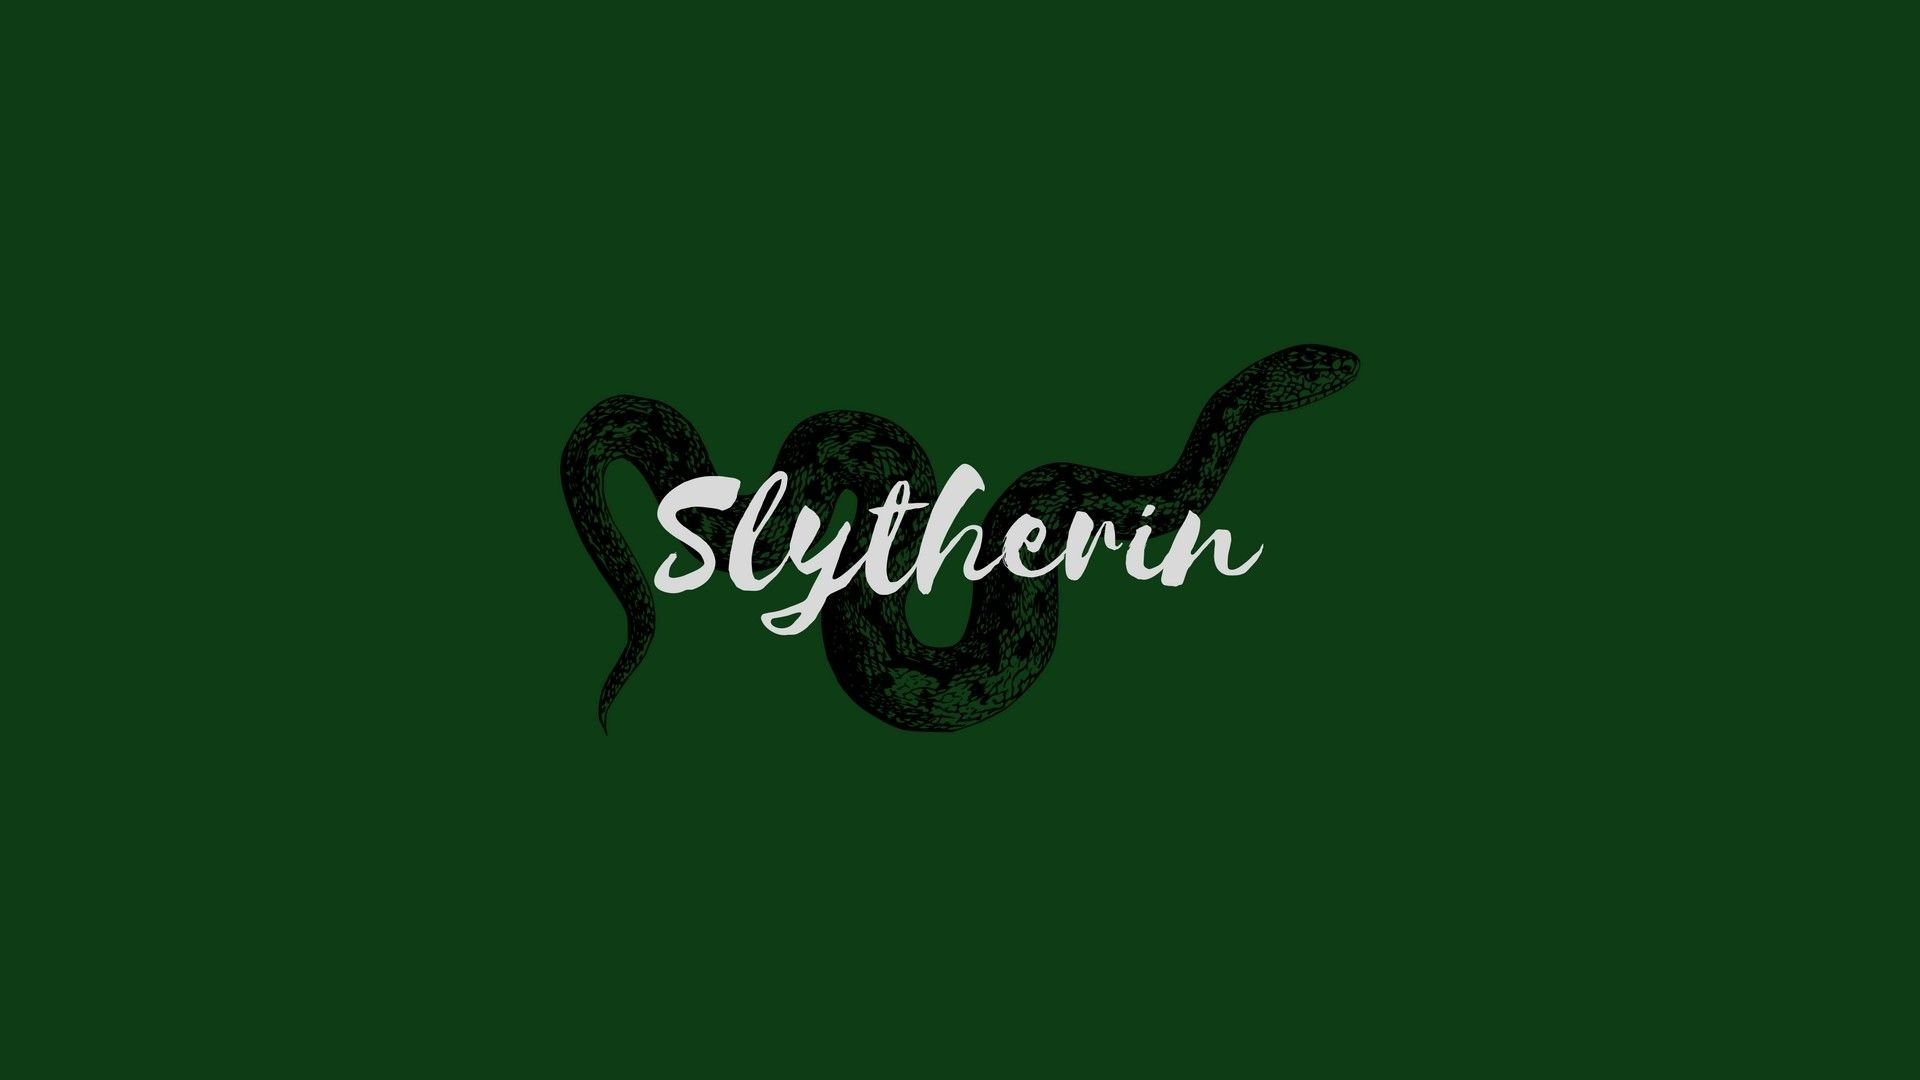 The slytherin logo on a green background - Slytherin